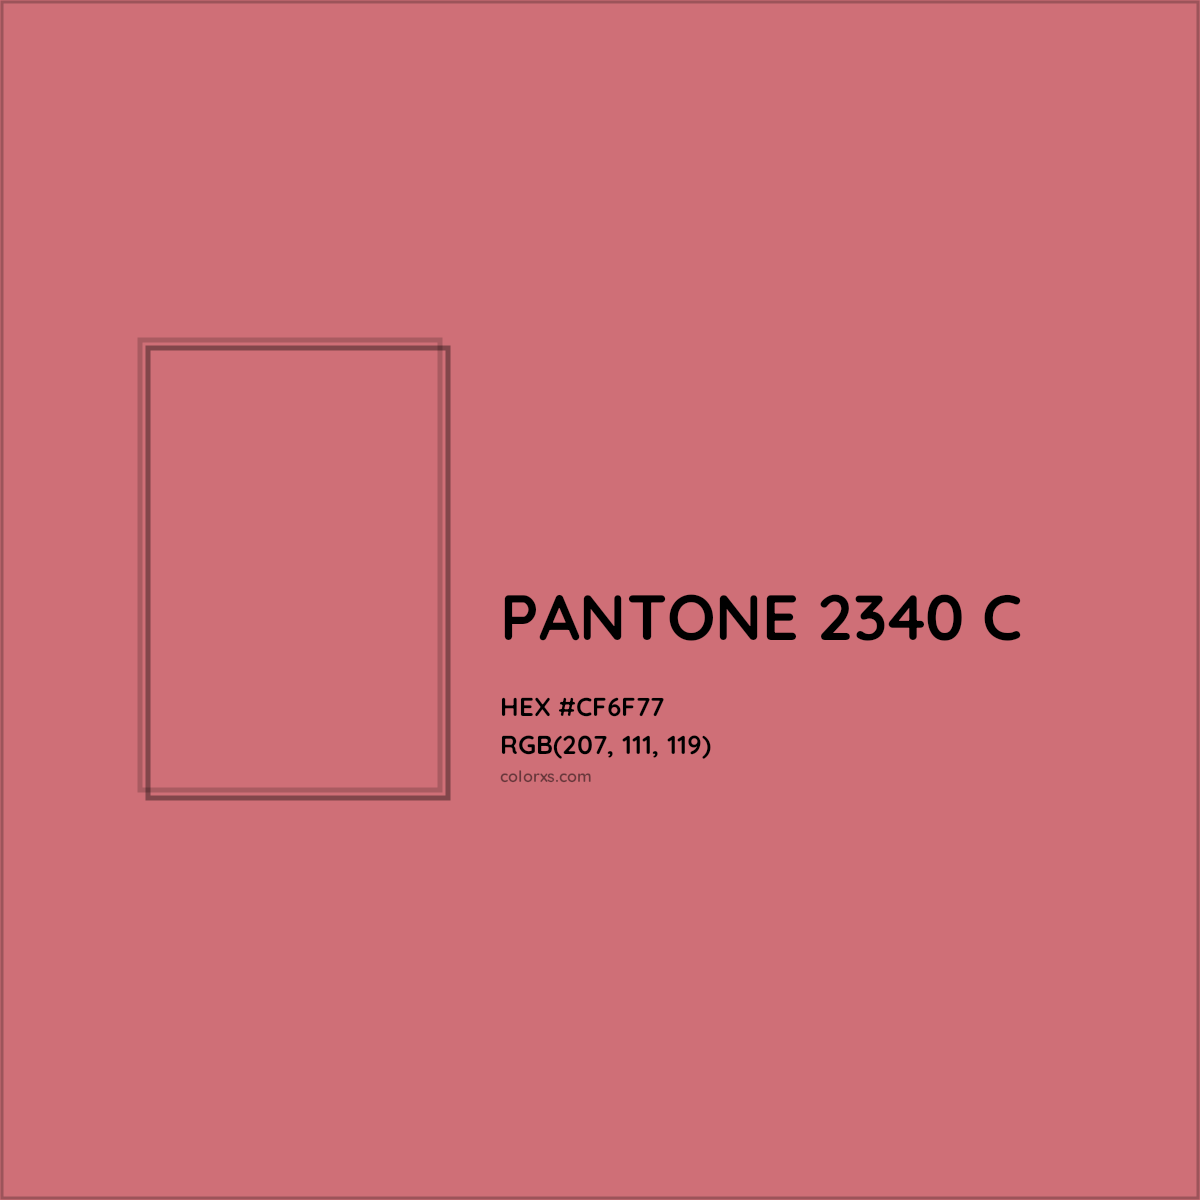 HEX #CF6F77 PANTONE 2340 C CMS Pantone PMS - Color Code